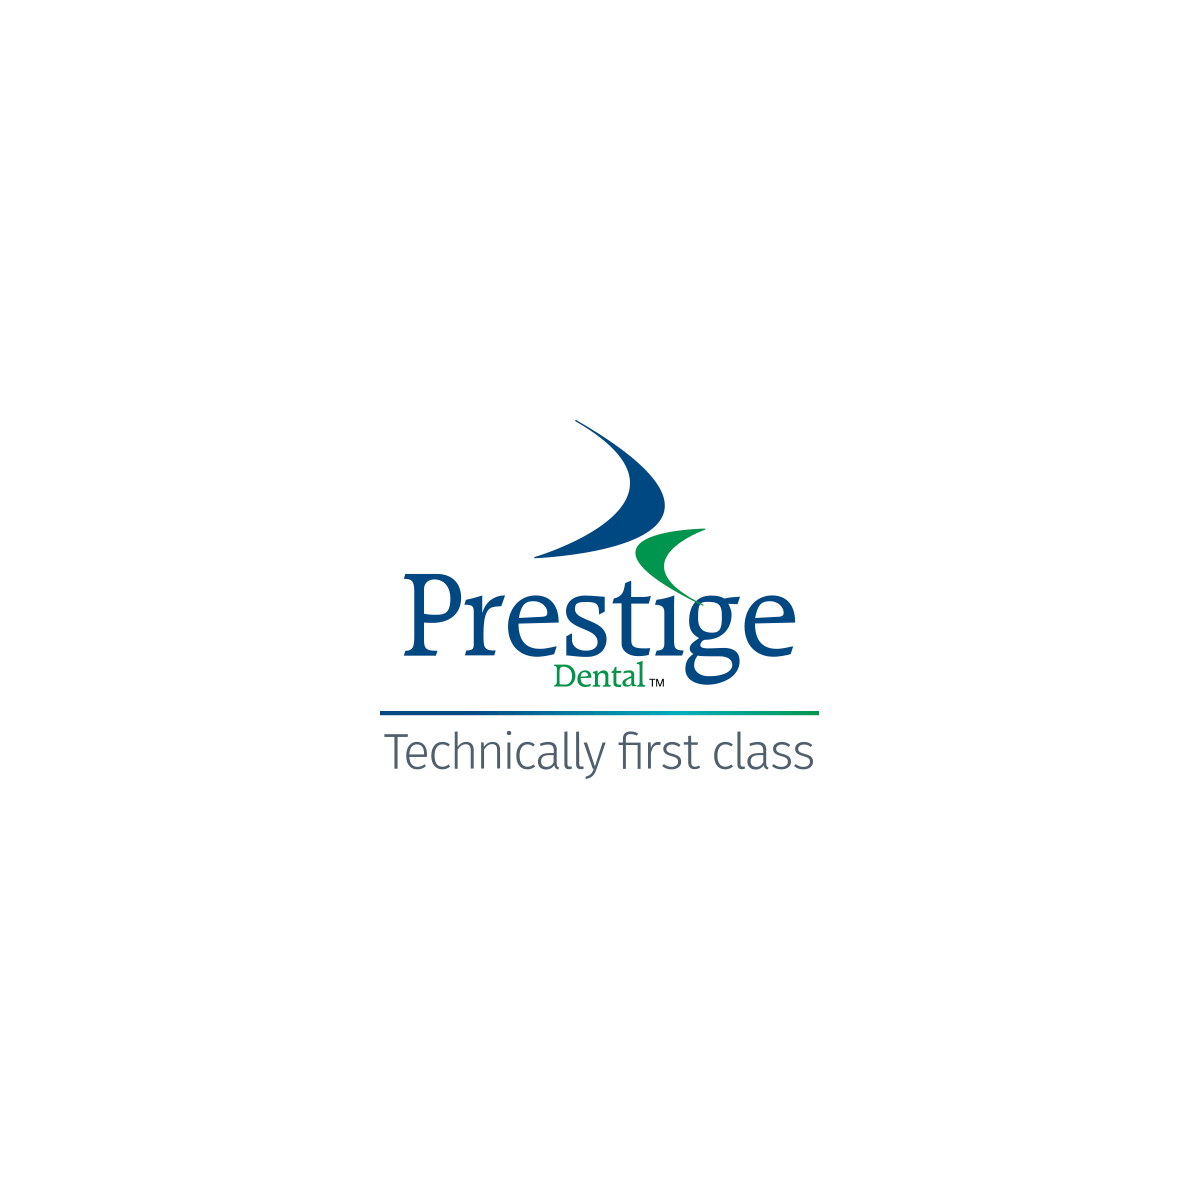 (c) Prestige-dental.co.uk